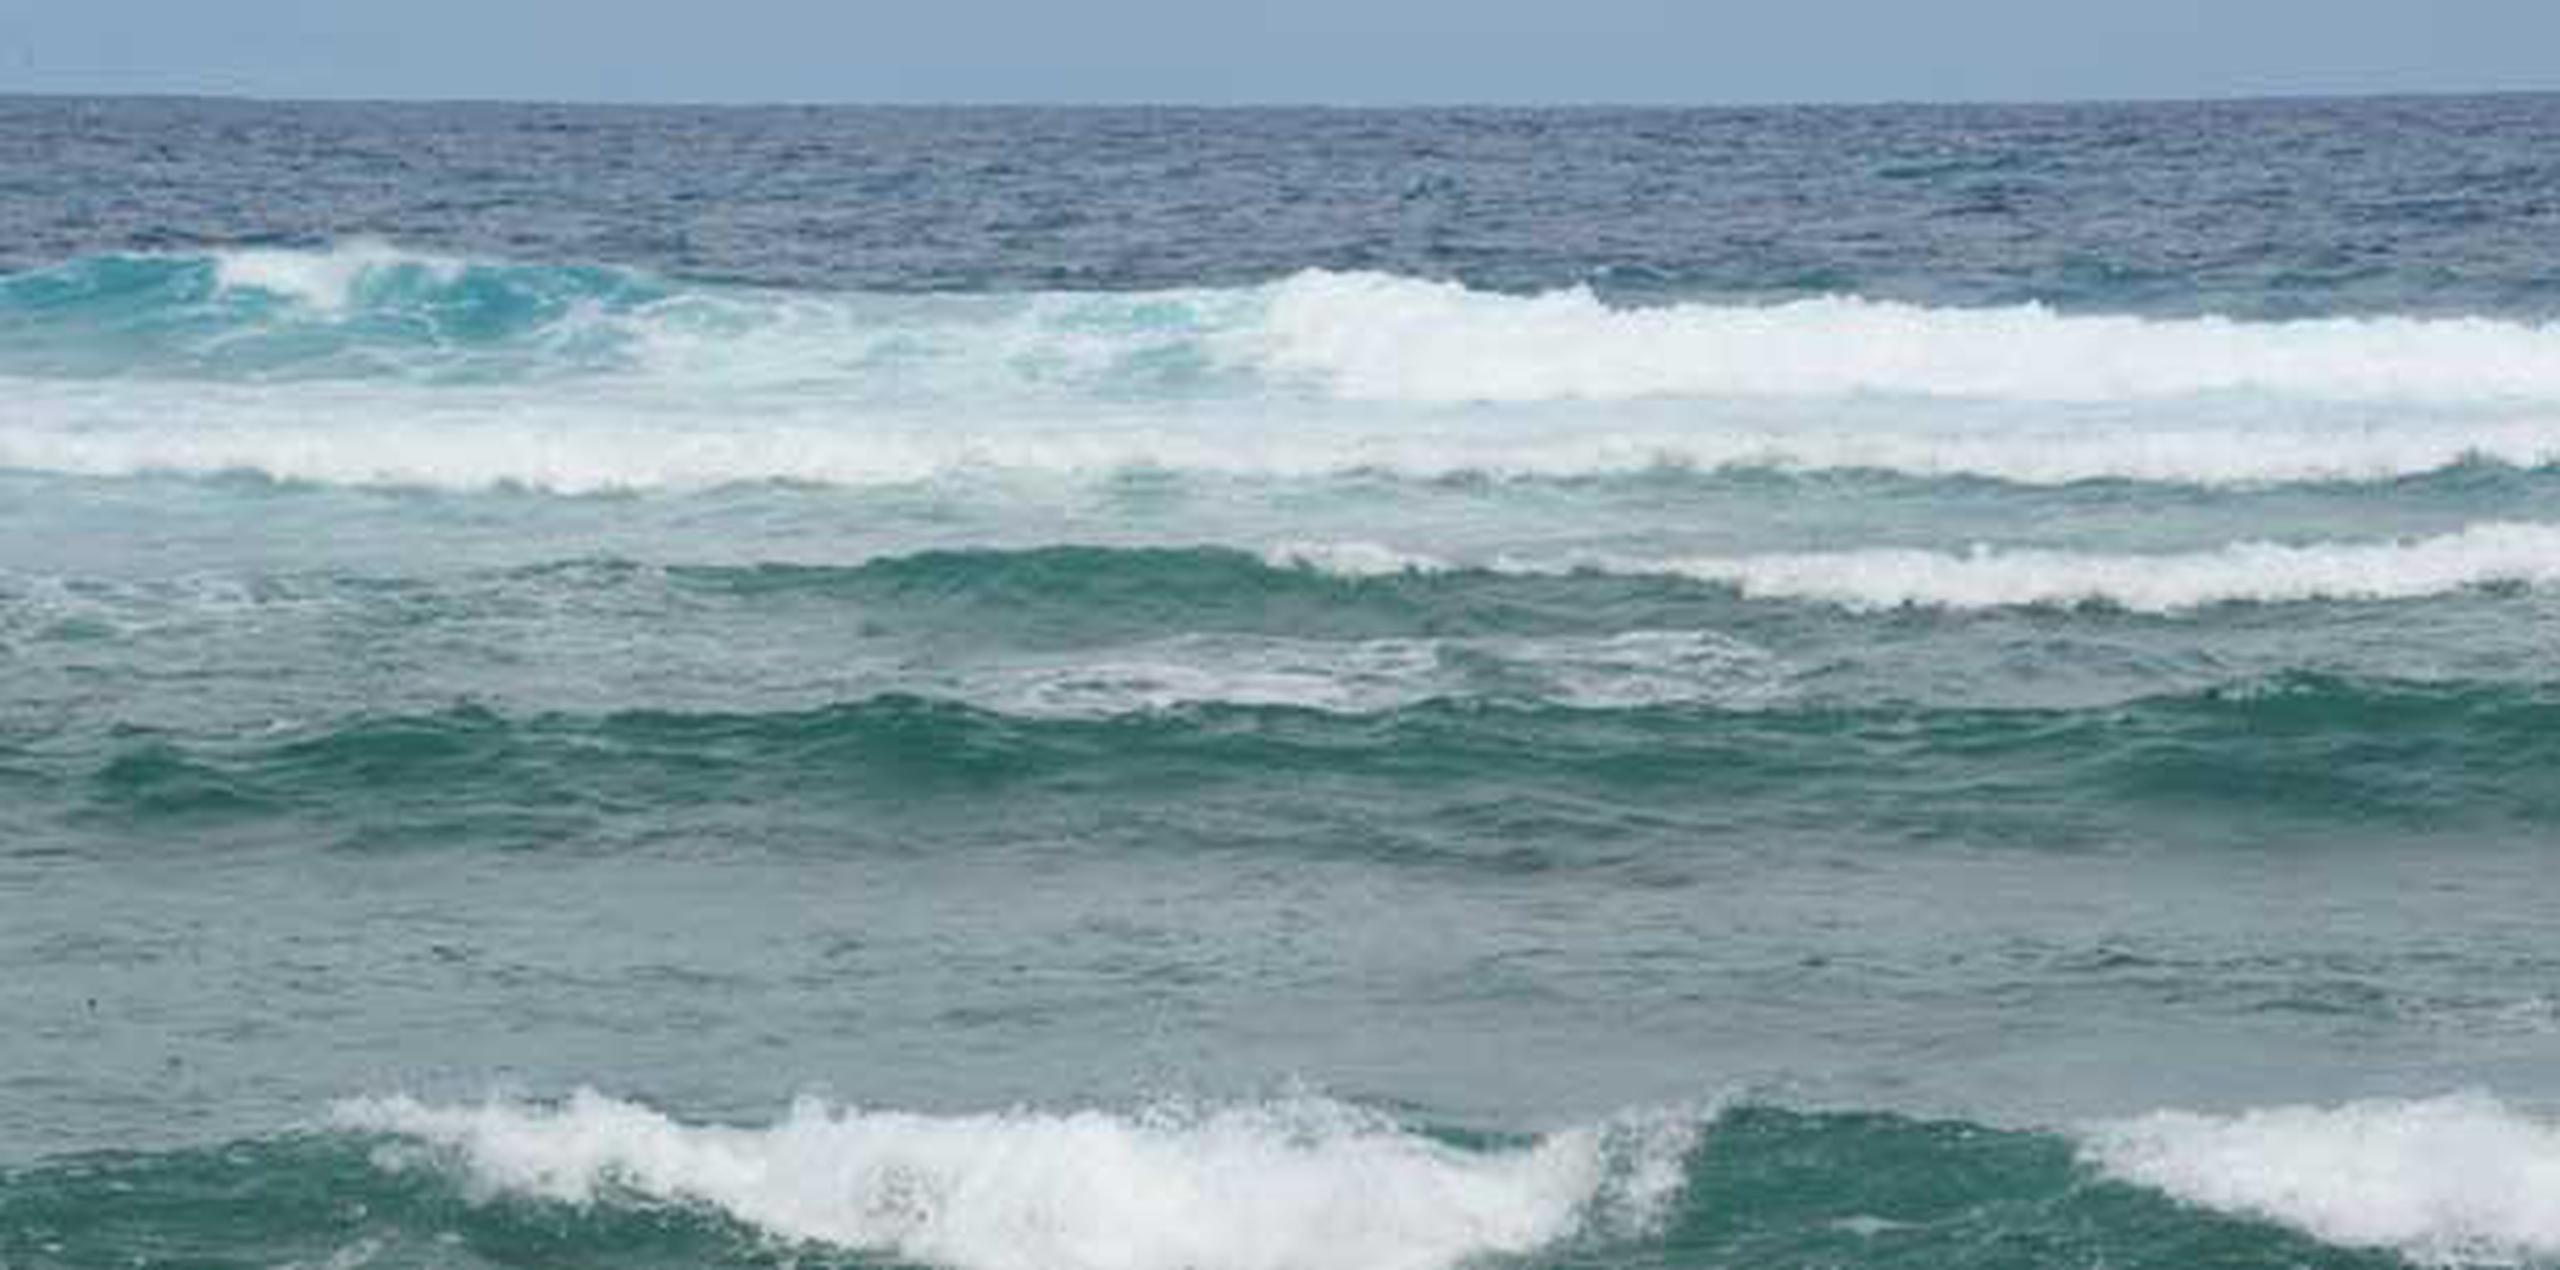 Las olas están entre cuatro a seis pies, por lo que se les recomienda a los navegantes que ejerzan precaución. (Archivo)